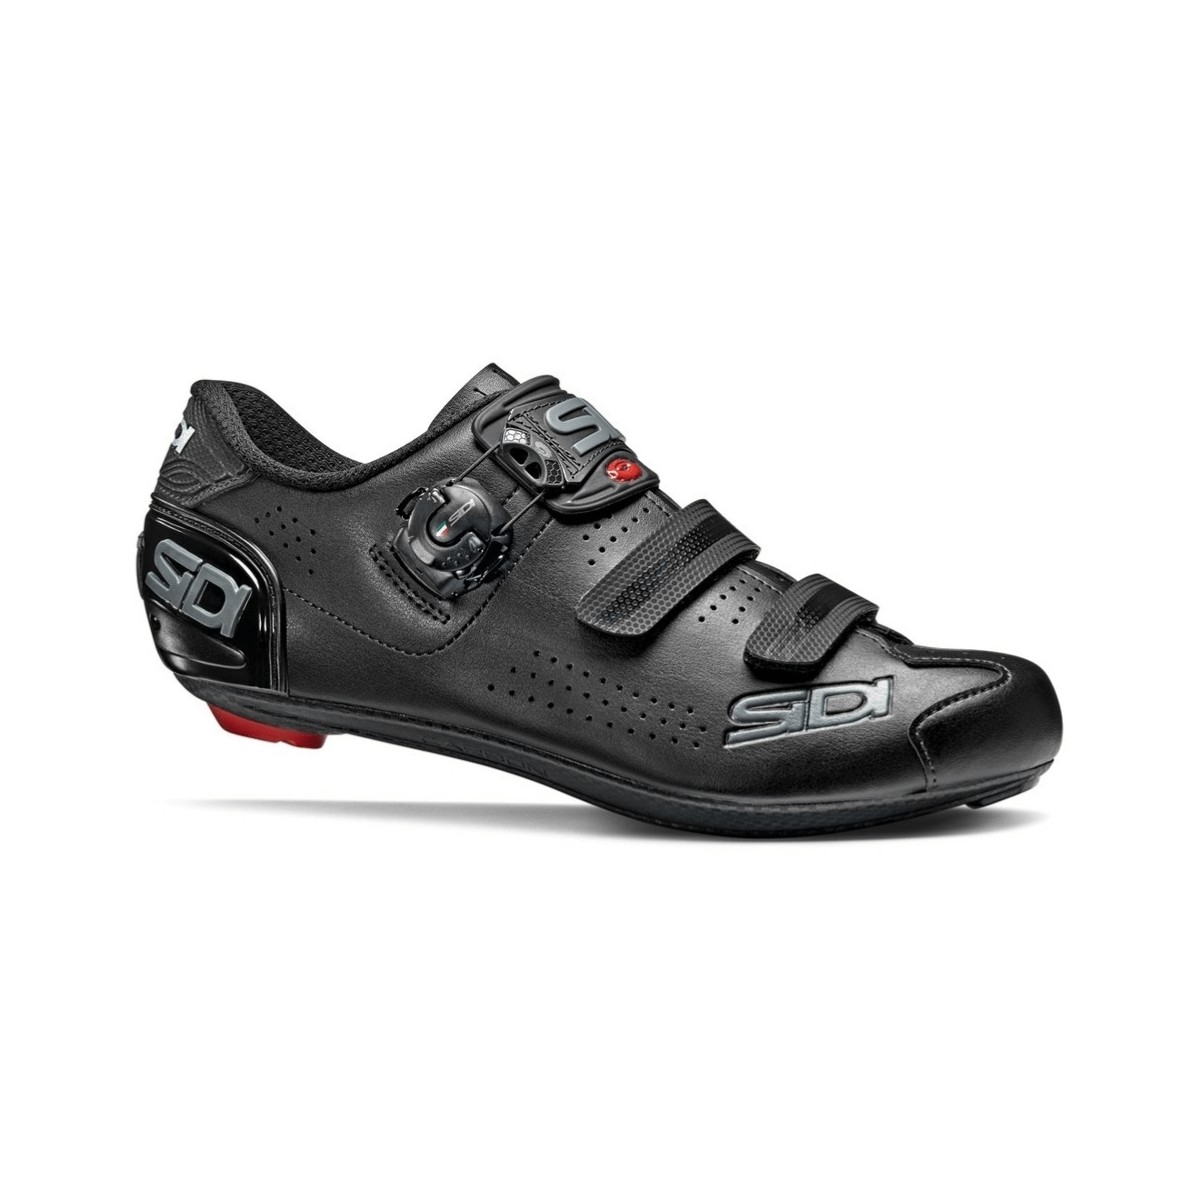 Sidi Alba 2 Cycling Shoes Black, Size 41 - EUR